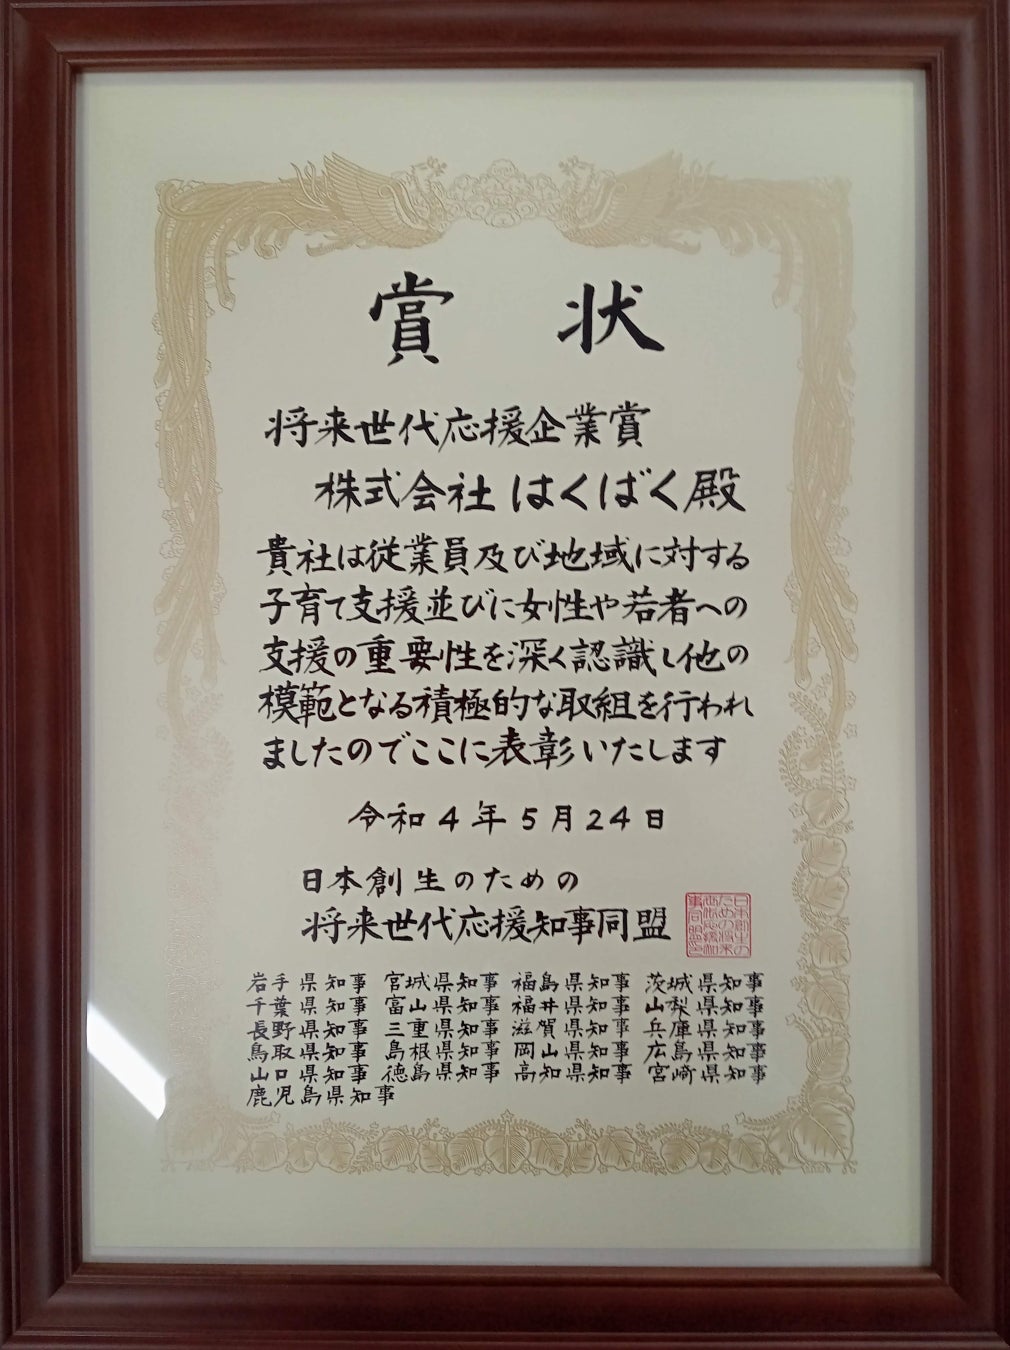 「日本創生のための将来世代応援知事同盟」による「将来世代応援企業賞」を受賞